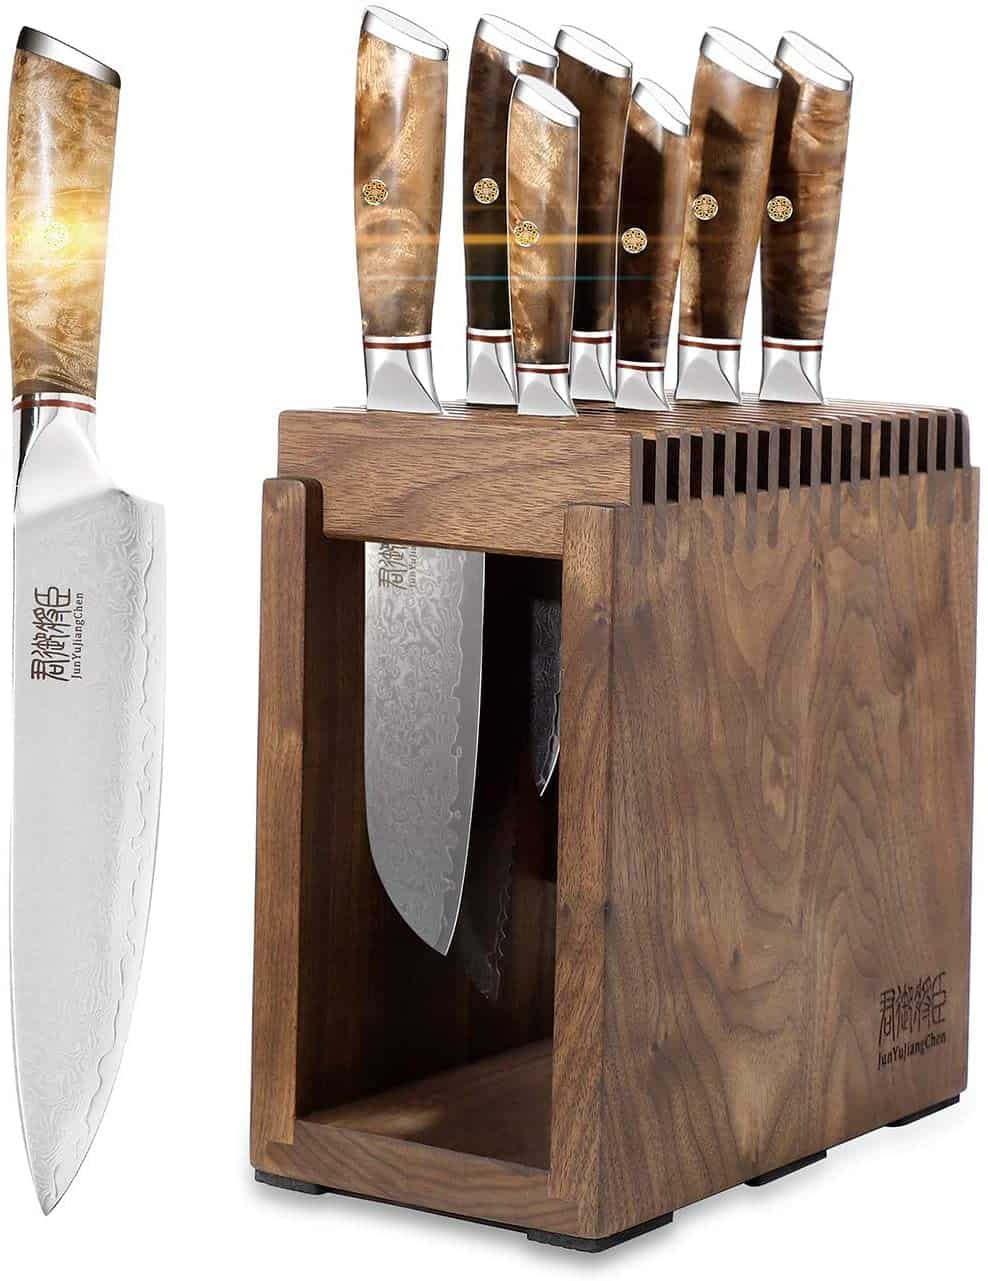 Bästa VG-10 stålknivset - JUNYUJIANGCHEN 8-delade Chefs Knife Set